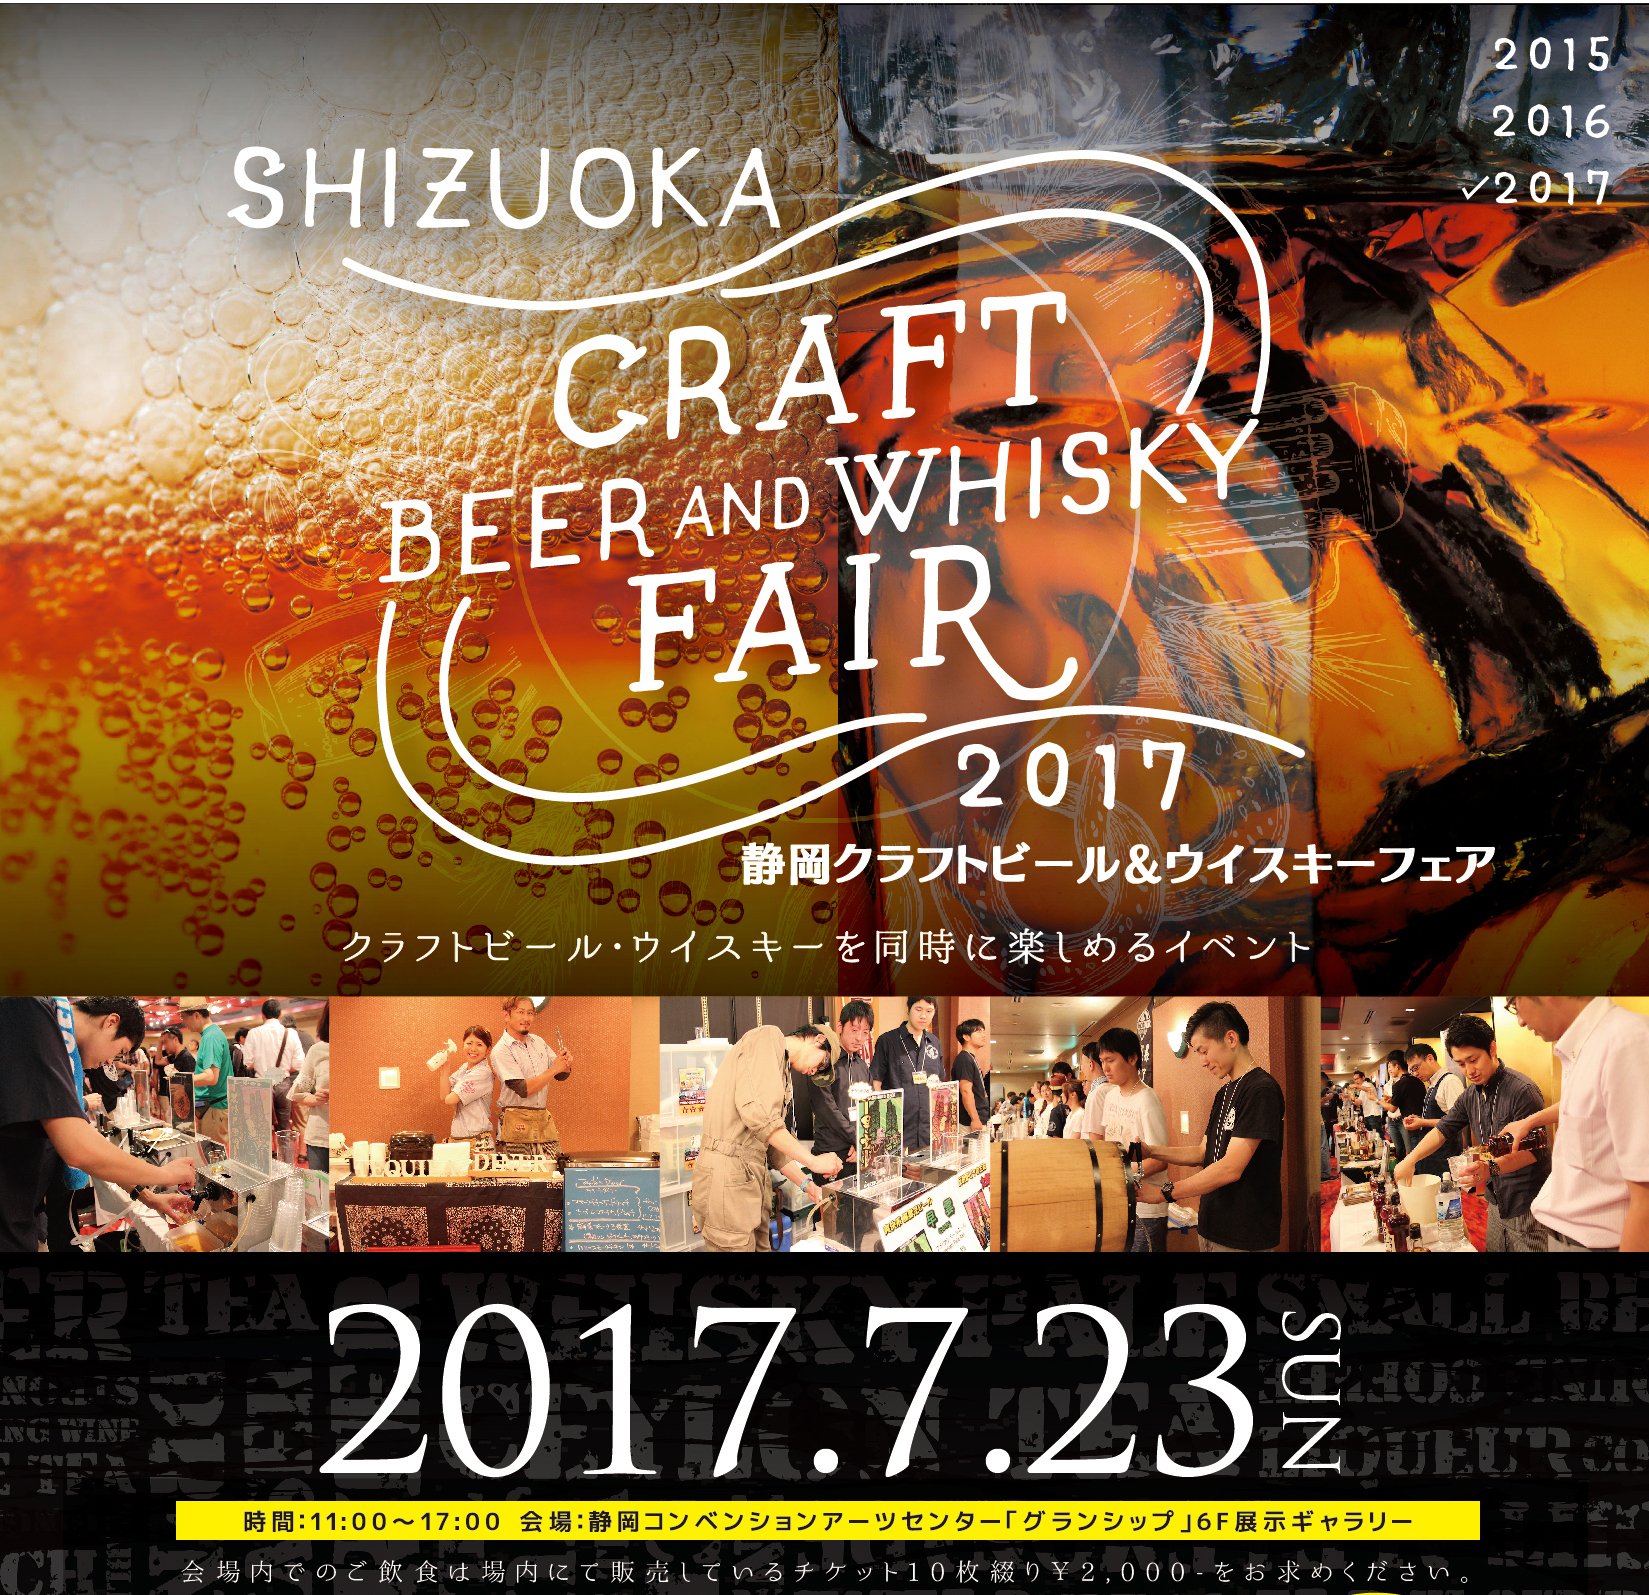 ニューポット試飲も 7 23 日 静岡クラフトビール ウイスキーフェア 17 豪華セミナー ビールリスト決定 日本ビアジャーナリスト協会